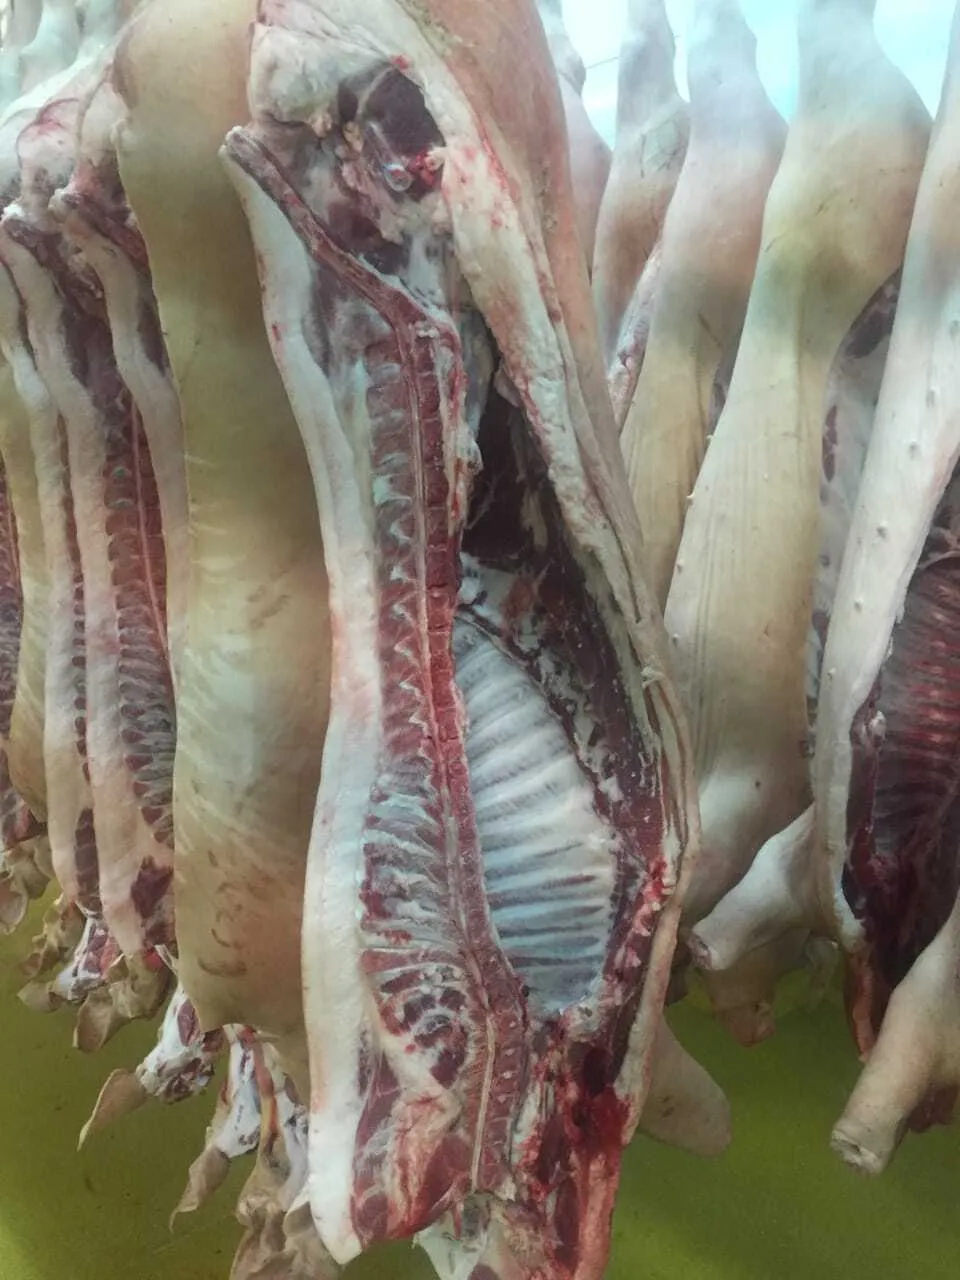  мясо свинины  в Уфе и Республике Башкортостан 2